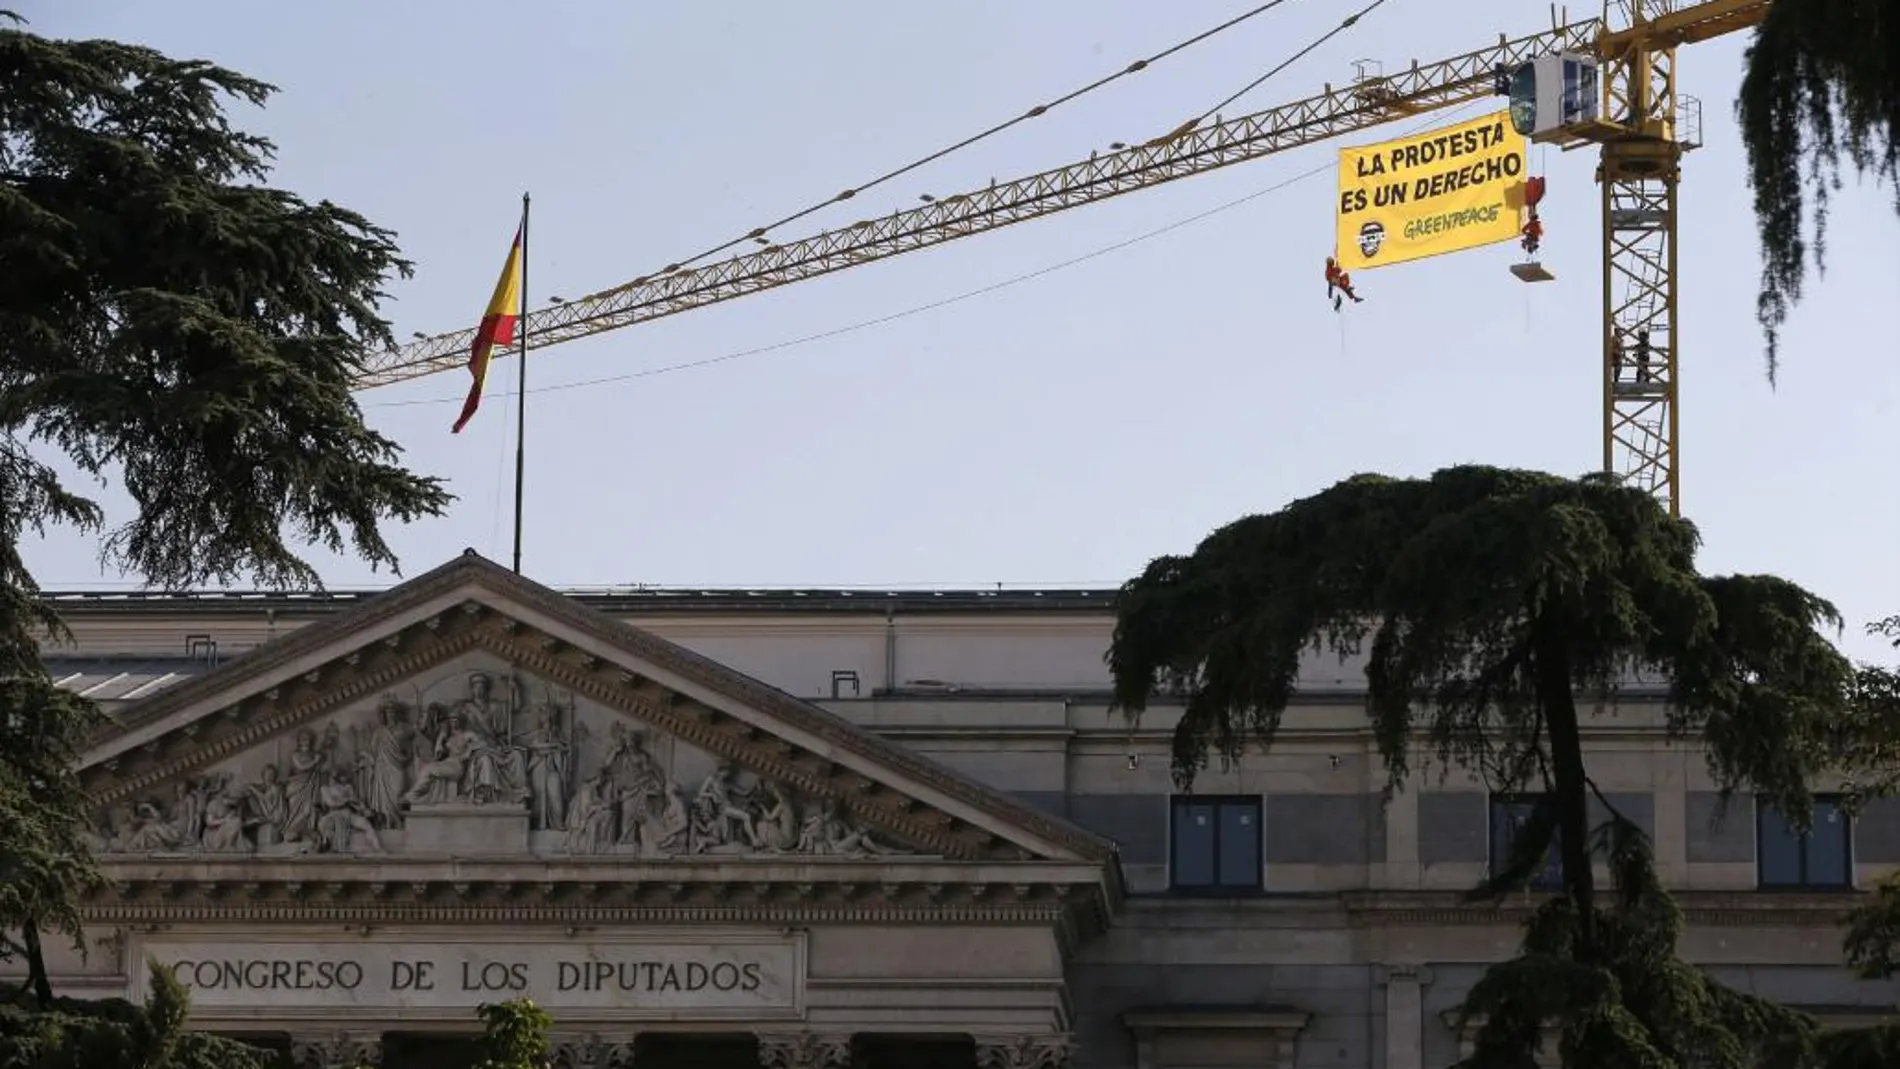 Tres activistas de Greenpeace han desplegado hoy una pancarta de 32 metros cuadrados en una grúa situada junto al Congreso de los Diputados contra la que denominan "ley mordaza", en referencia a la ley de seguridad ciudadana que entrará mañana en vigor.